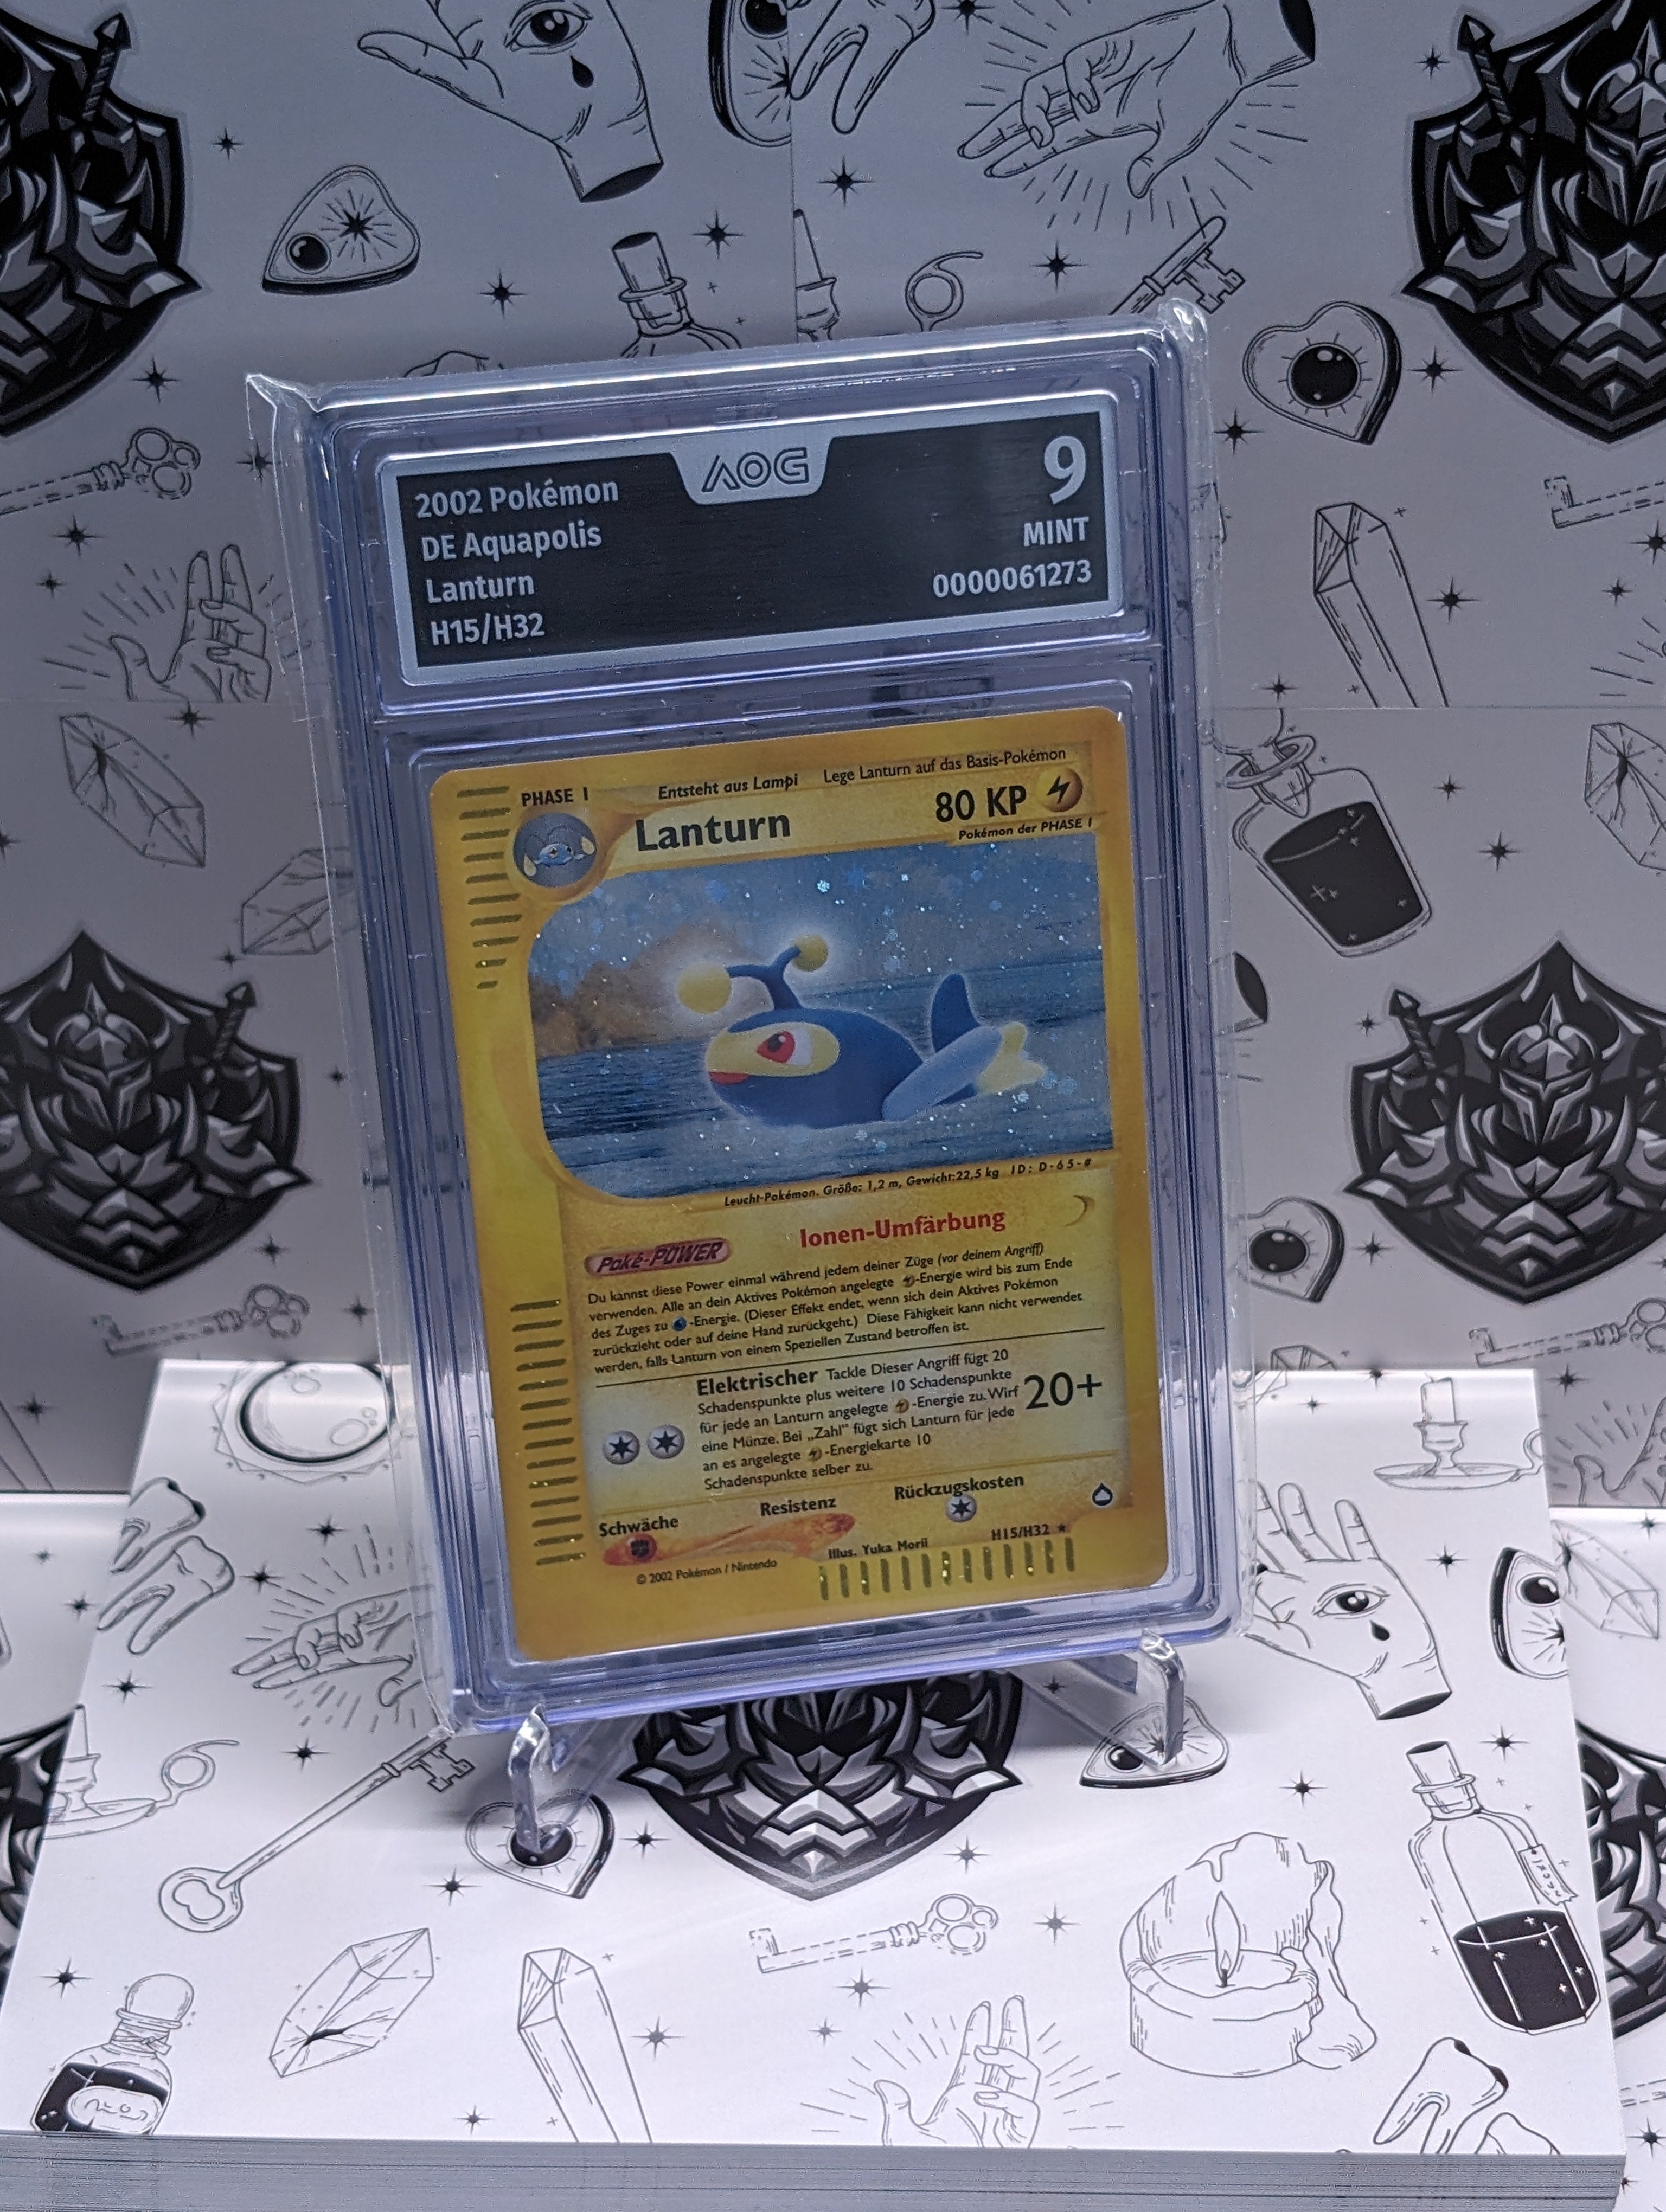 AOG Graded 9 - 2002 Pokémon – Aquapolis – DE Lanturn H15/H32